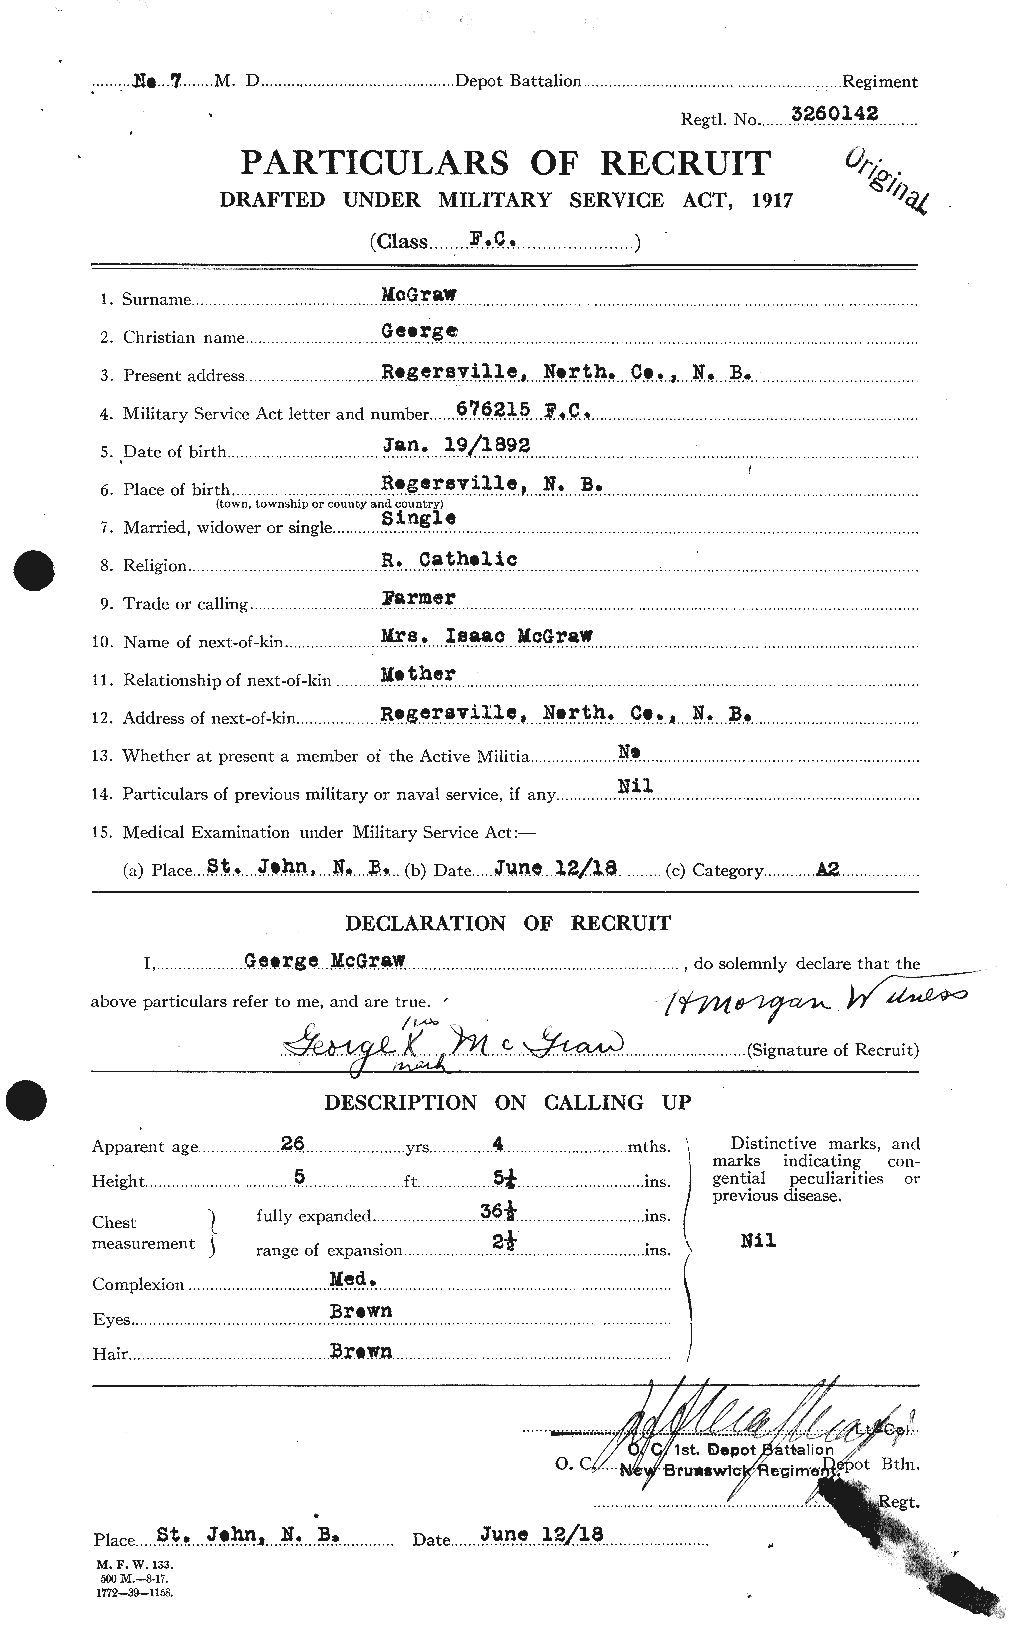 Dossiers du Personnel de la Première Guerre mondiale - CEC 523730a